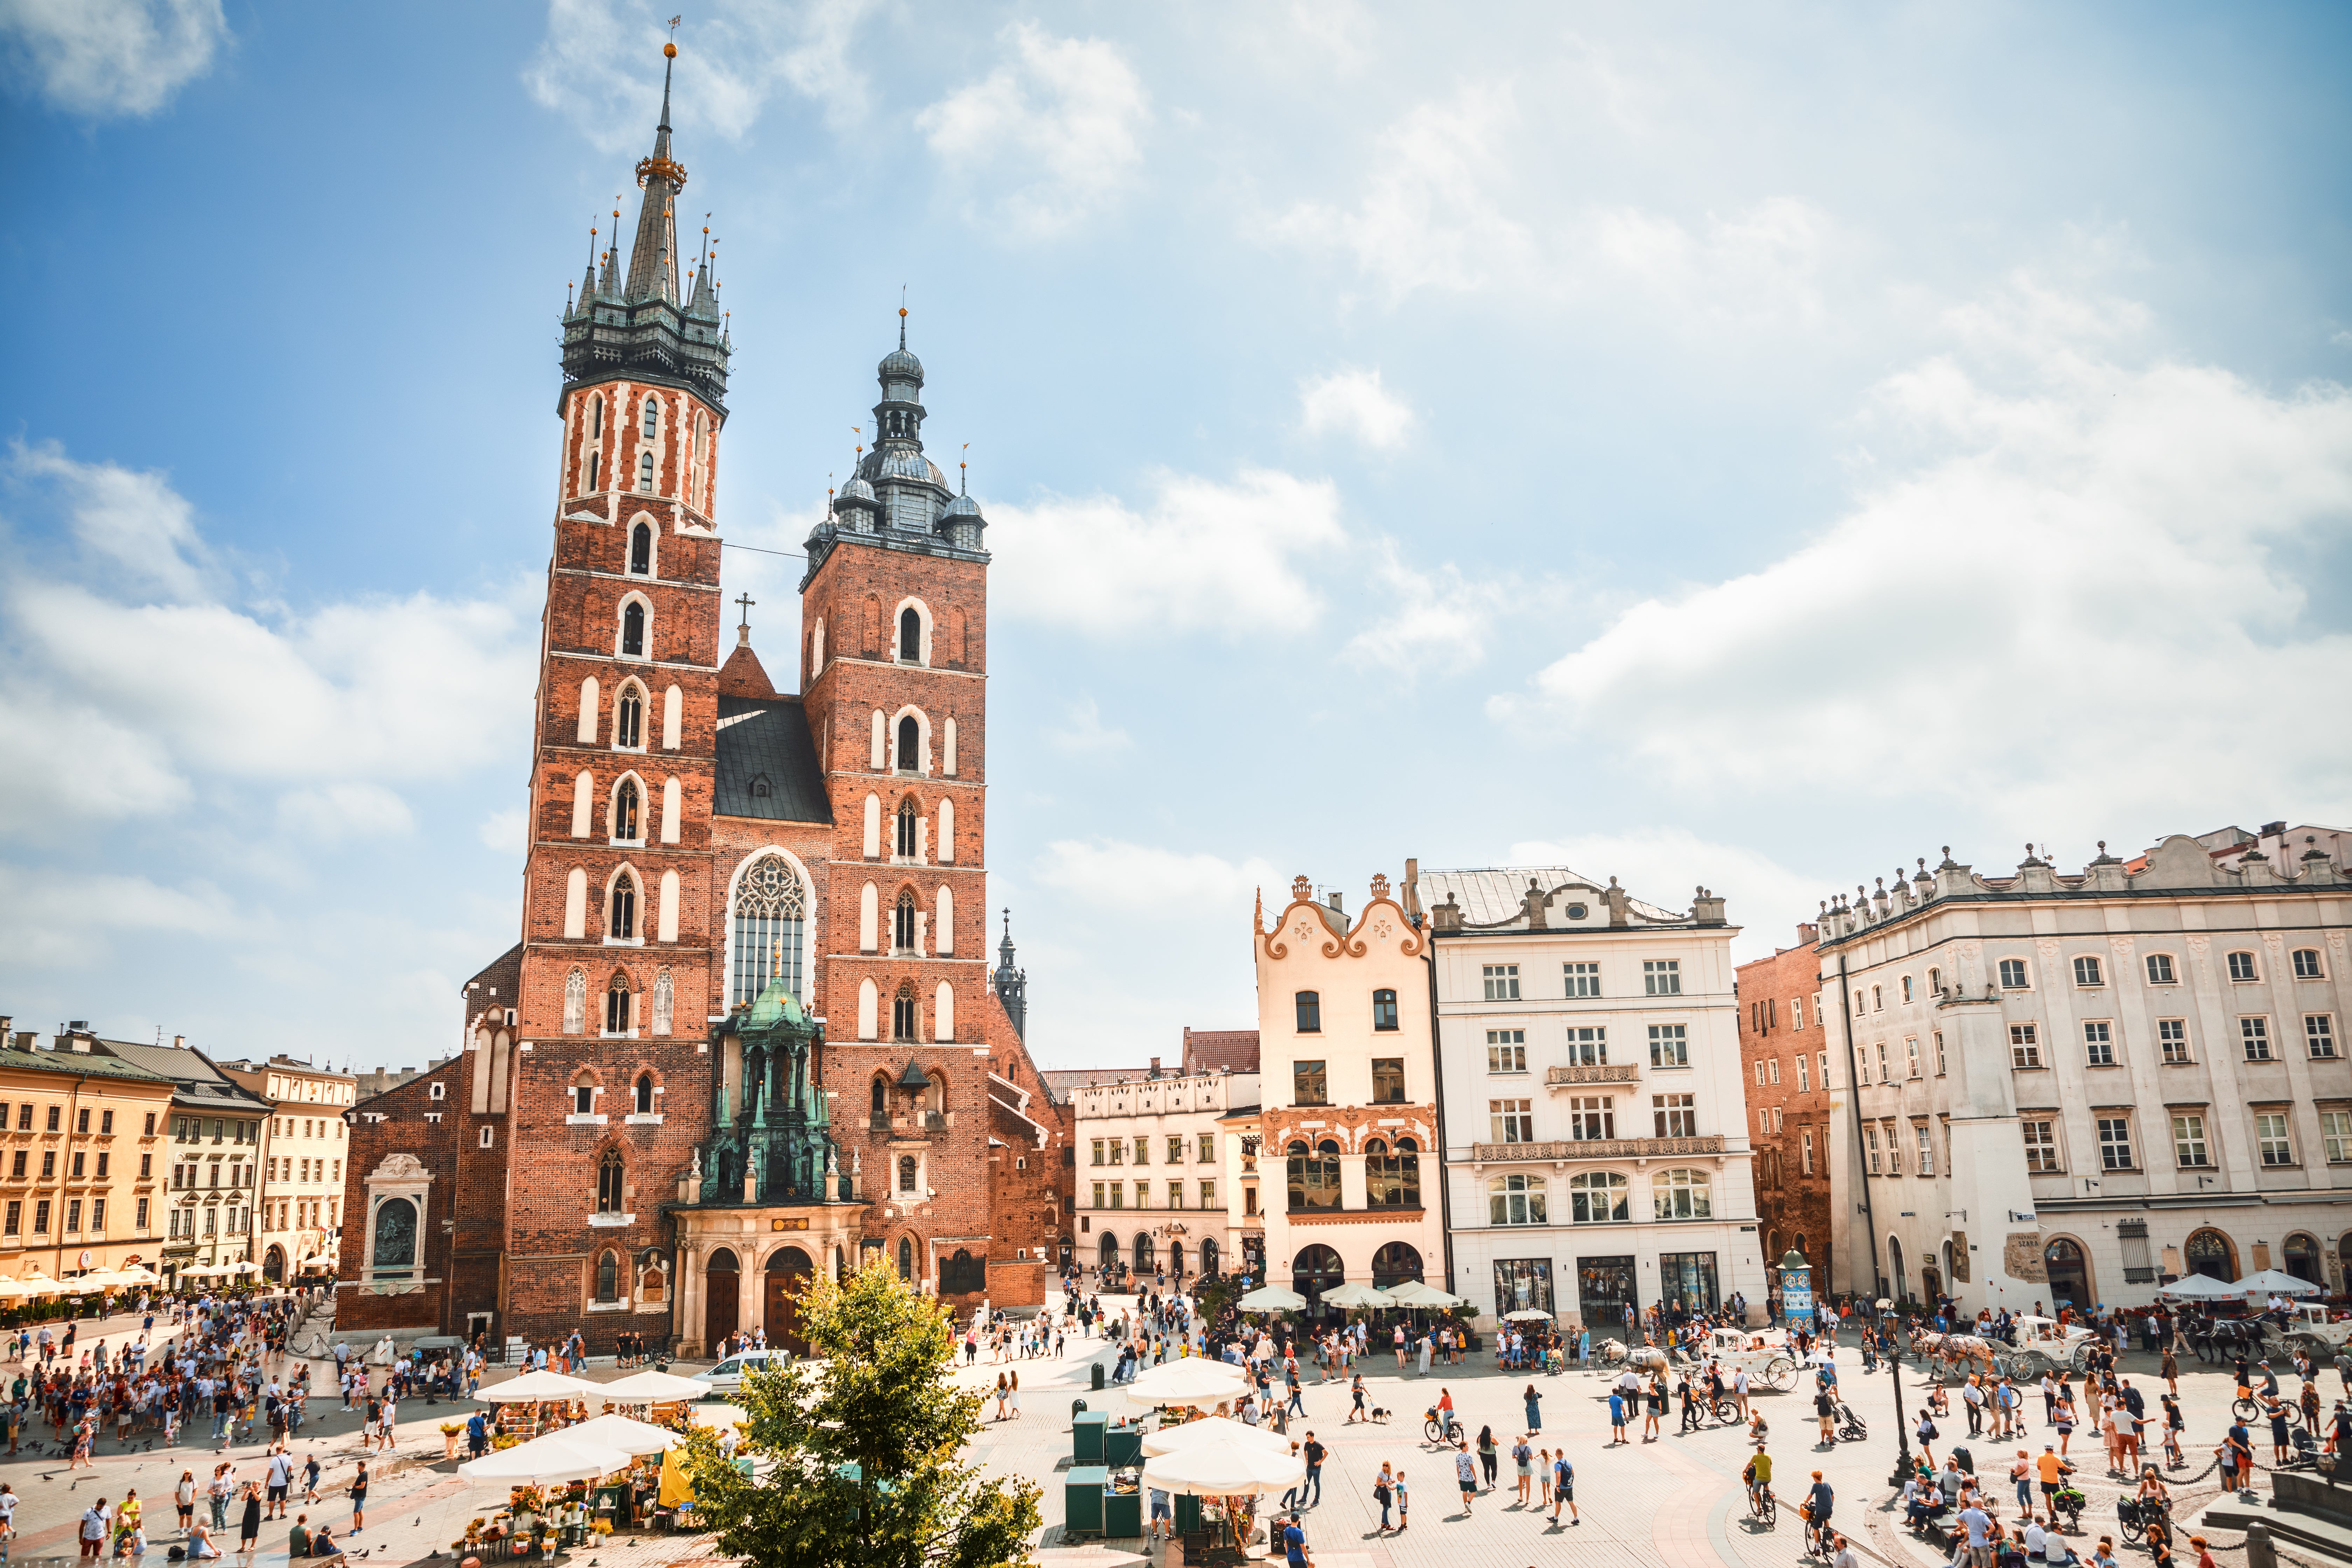 Krakow’s bustling Old Town